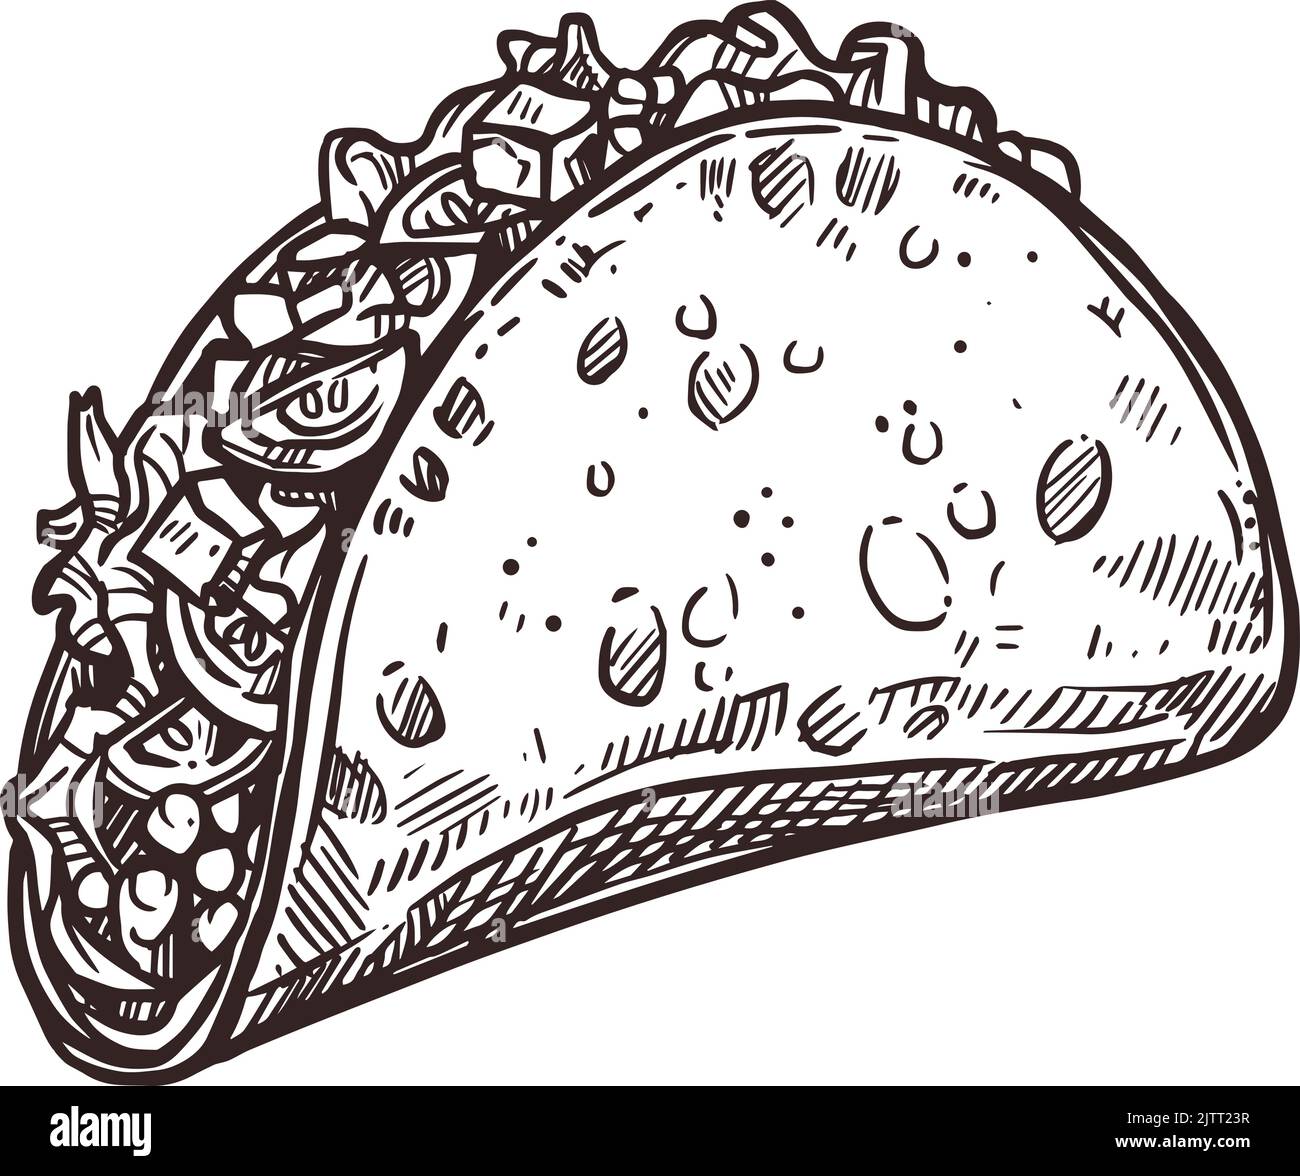 Taco mexicain, cuisine traditionnelle mexicaine Fiesta, croquis vectoriel. Cinco de Mayo ou le symbole fiesta du 5 mai des tacos mexicains dans un croquis dessiné à la main Illustration de Vecteur